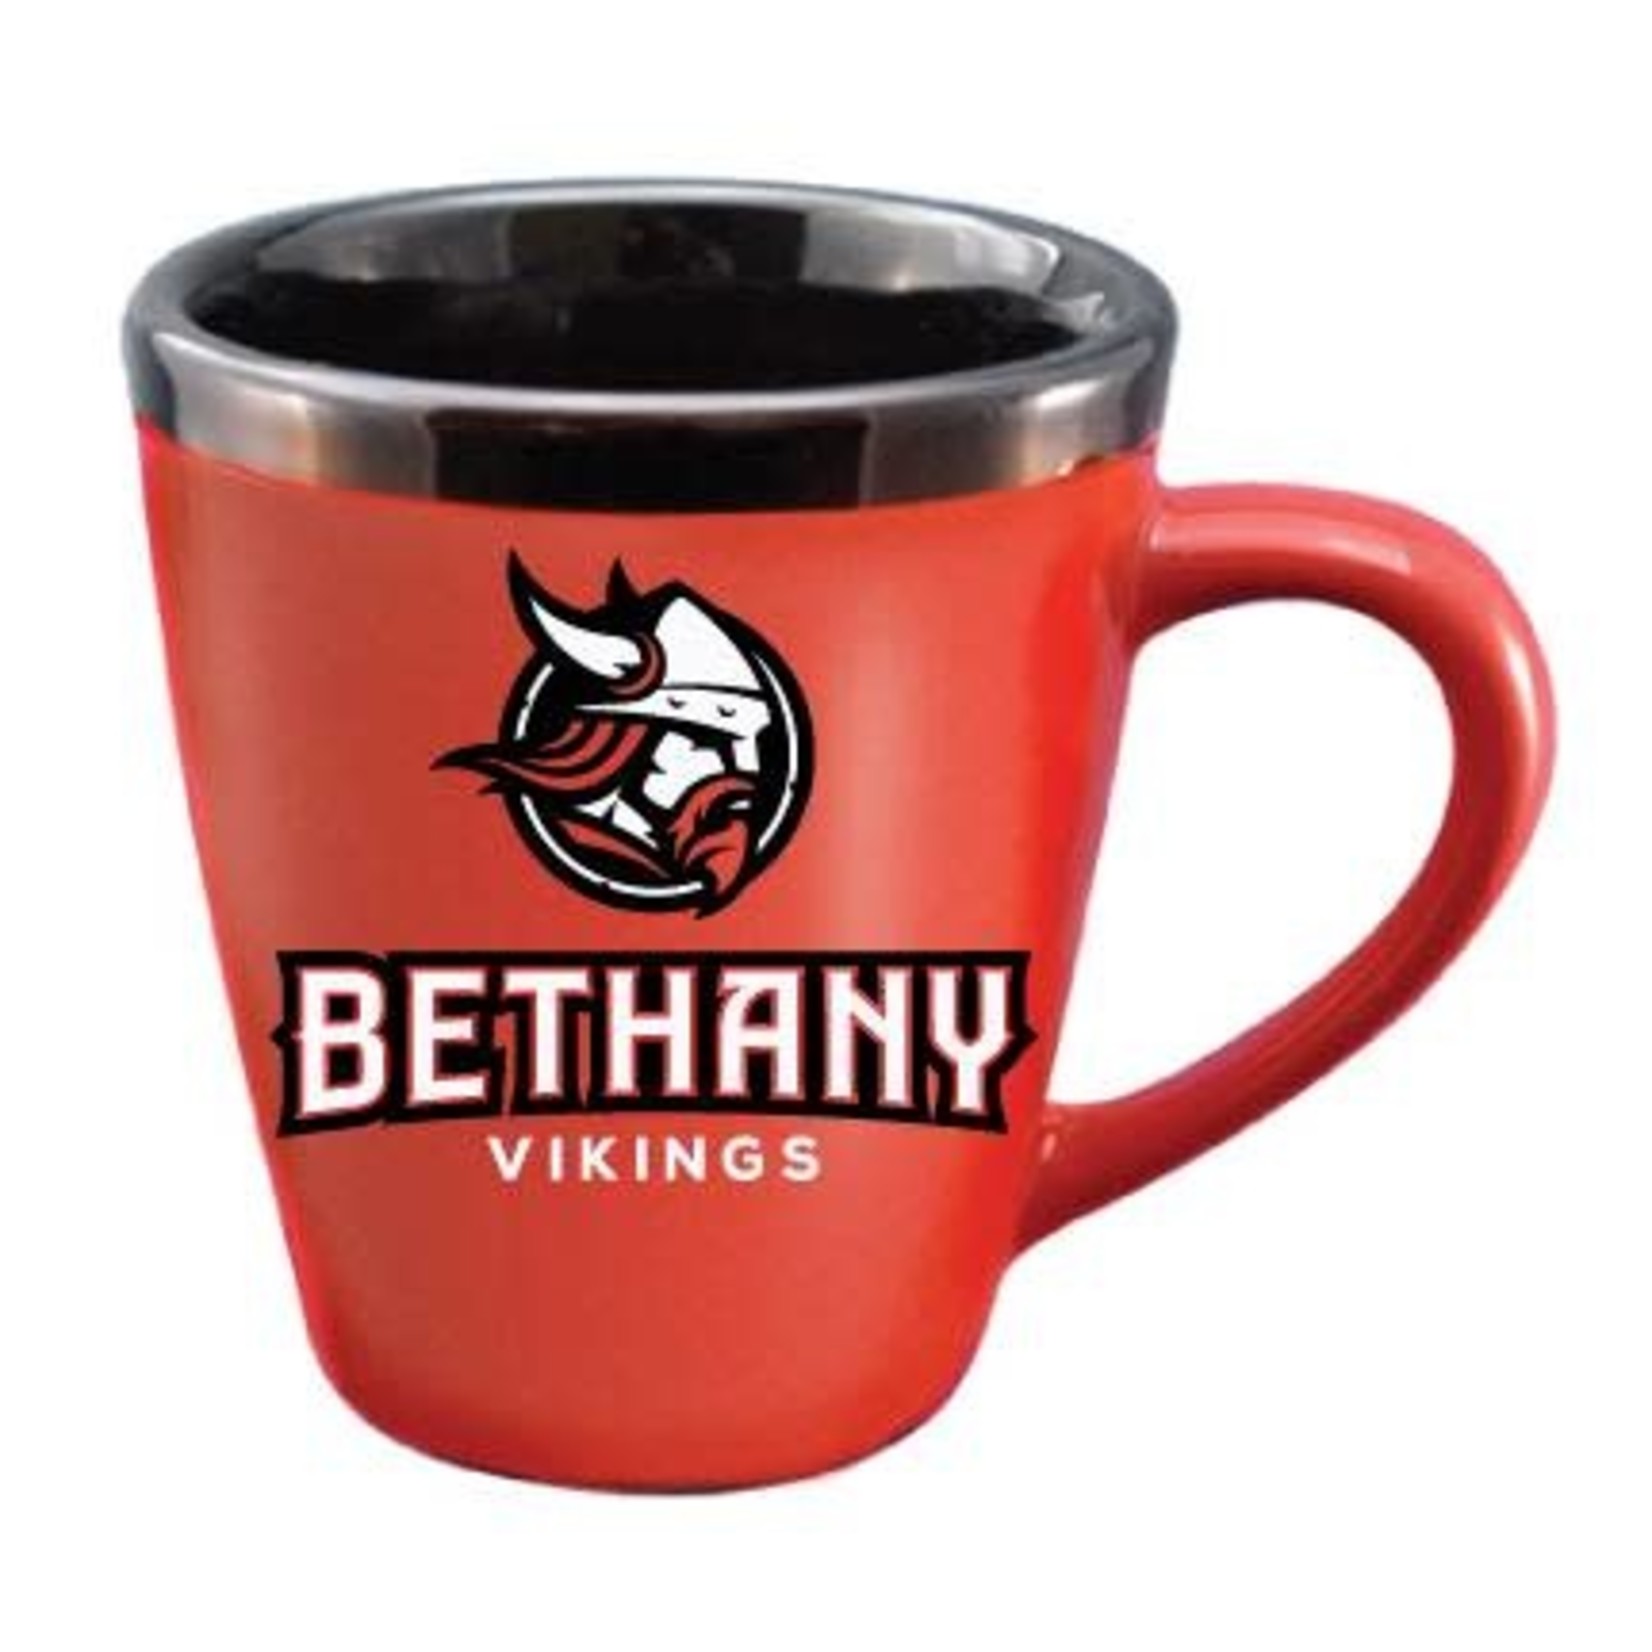 RFSJ Inc. Bethany Vikings Ceramic Mug - Red/Black